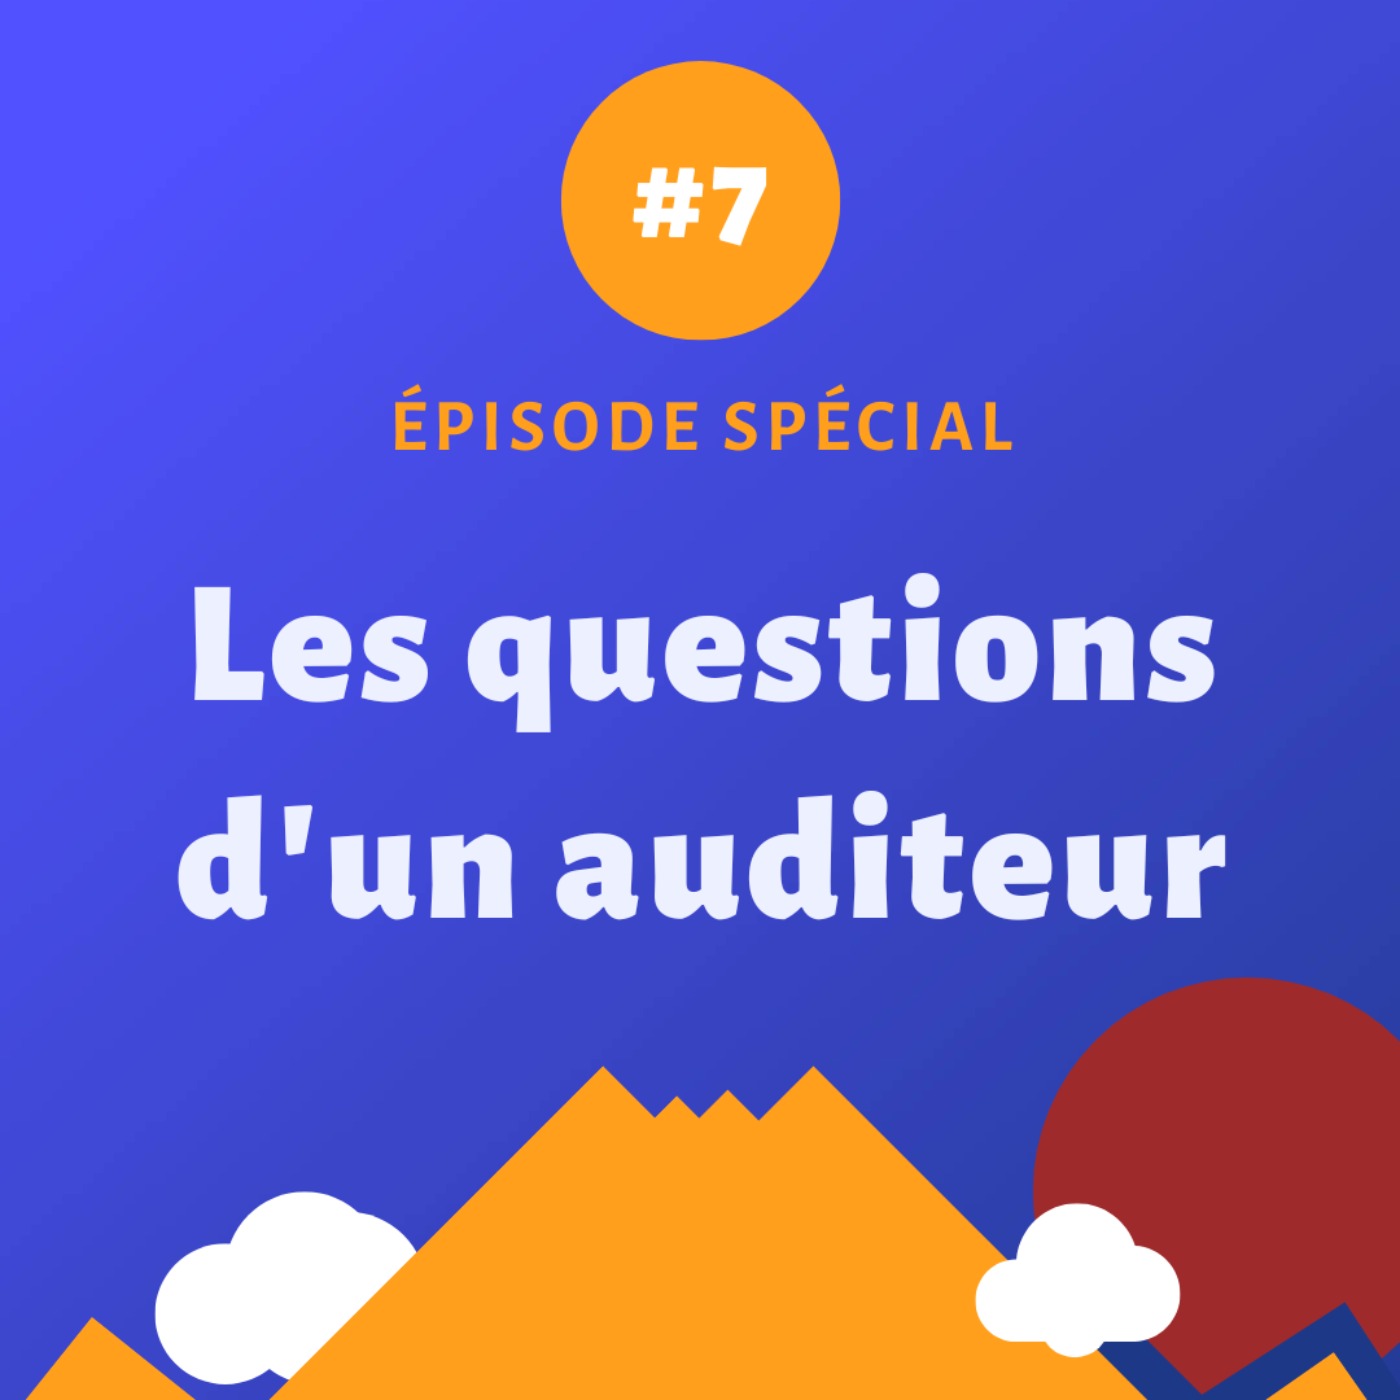 Episode spécial #7 - Les questions d'un auditeur